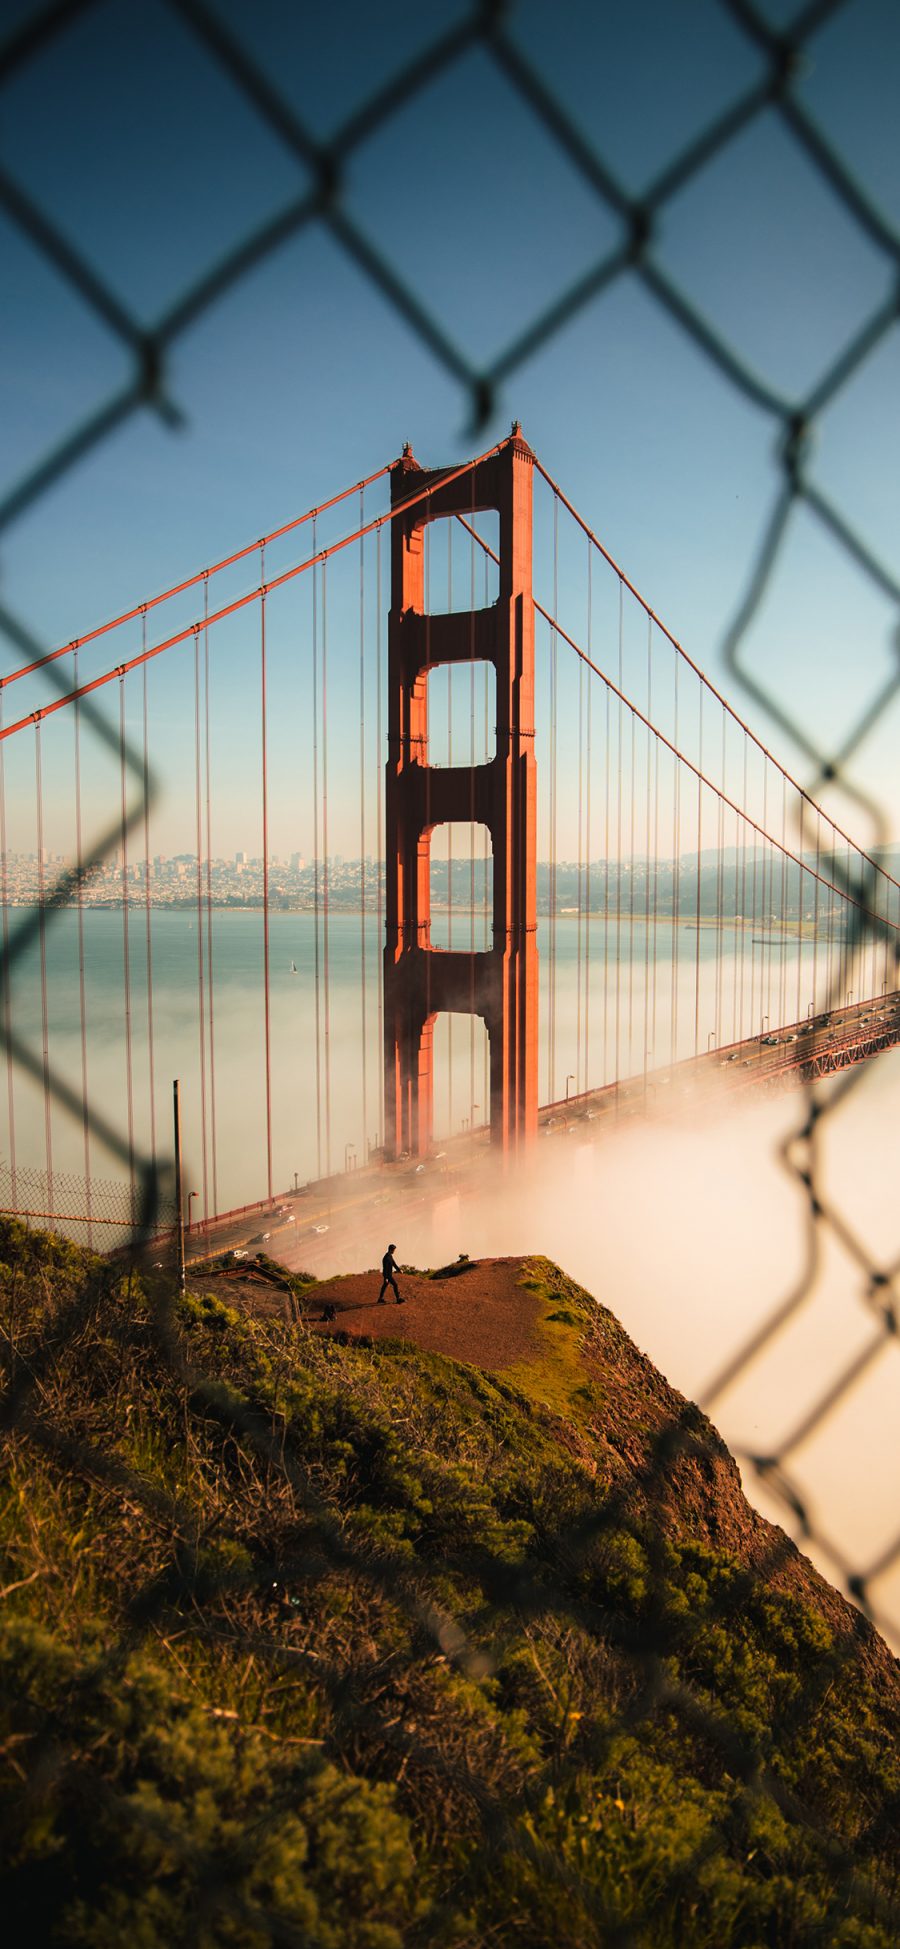 [2436×1125]建筑 桥梁 铁丝网 旧金山 金门大桥 苹果手机壁纸图片